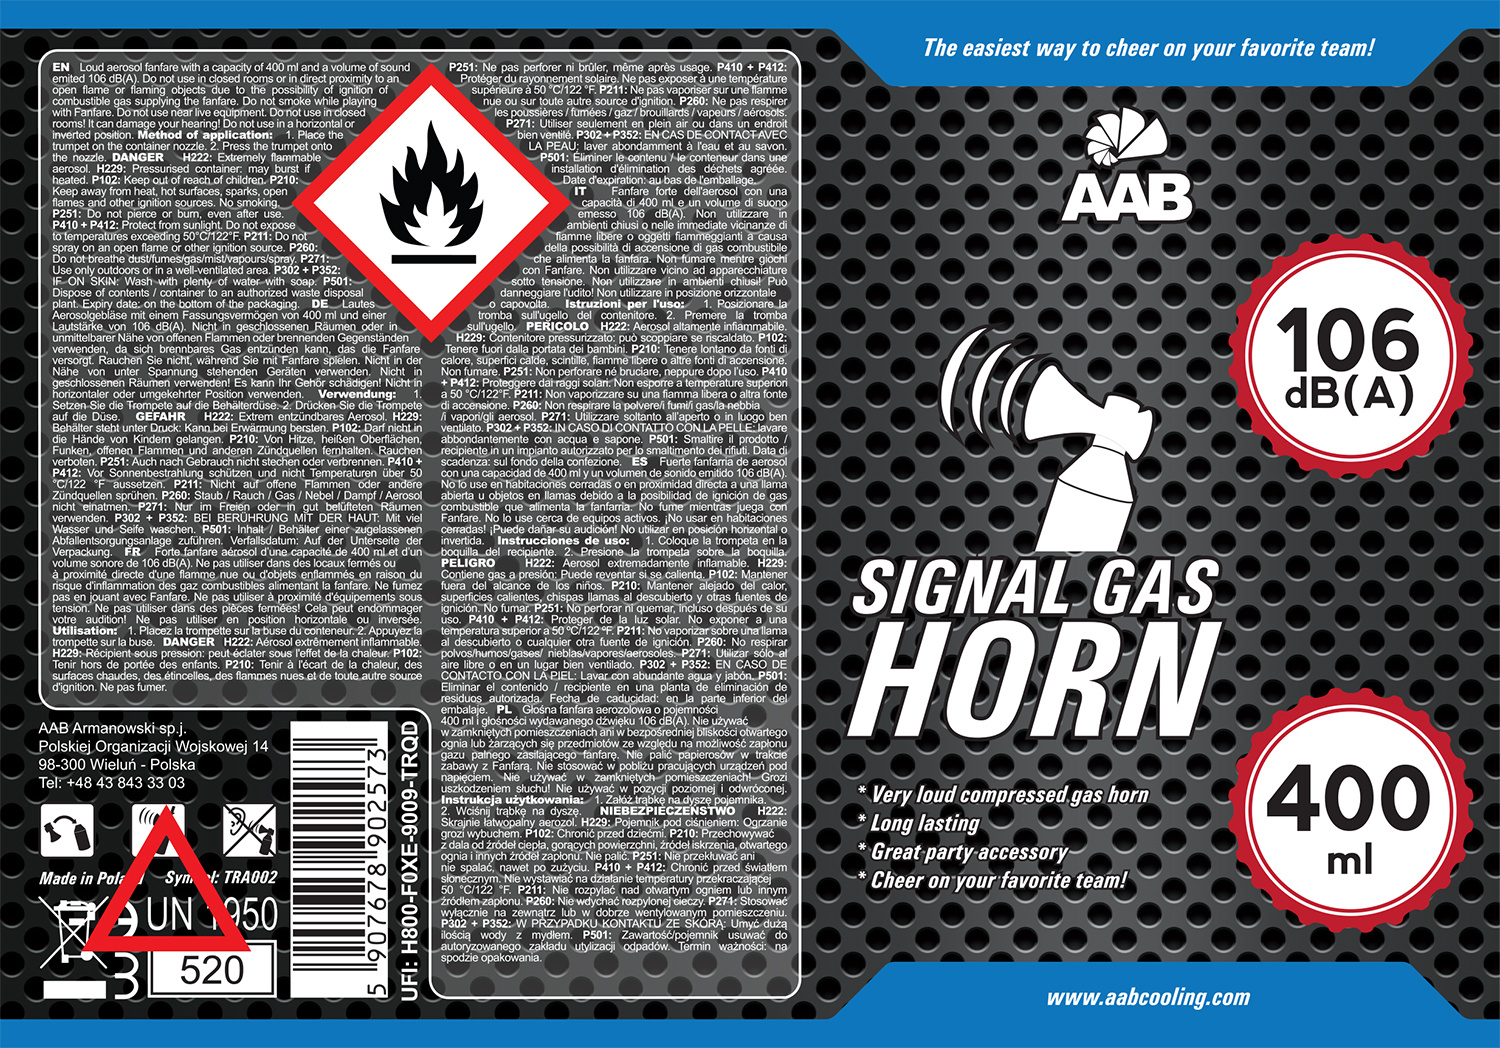 10 x AAB SIGNAL GAS HORN 400ml - PRESSLUFT-HORN, FUSSBALL-HUPE,  DRUCKLUFT-HORN